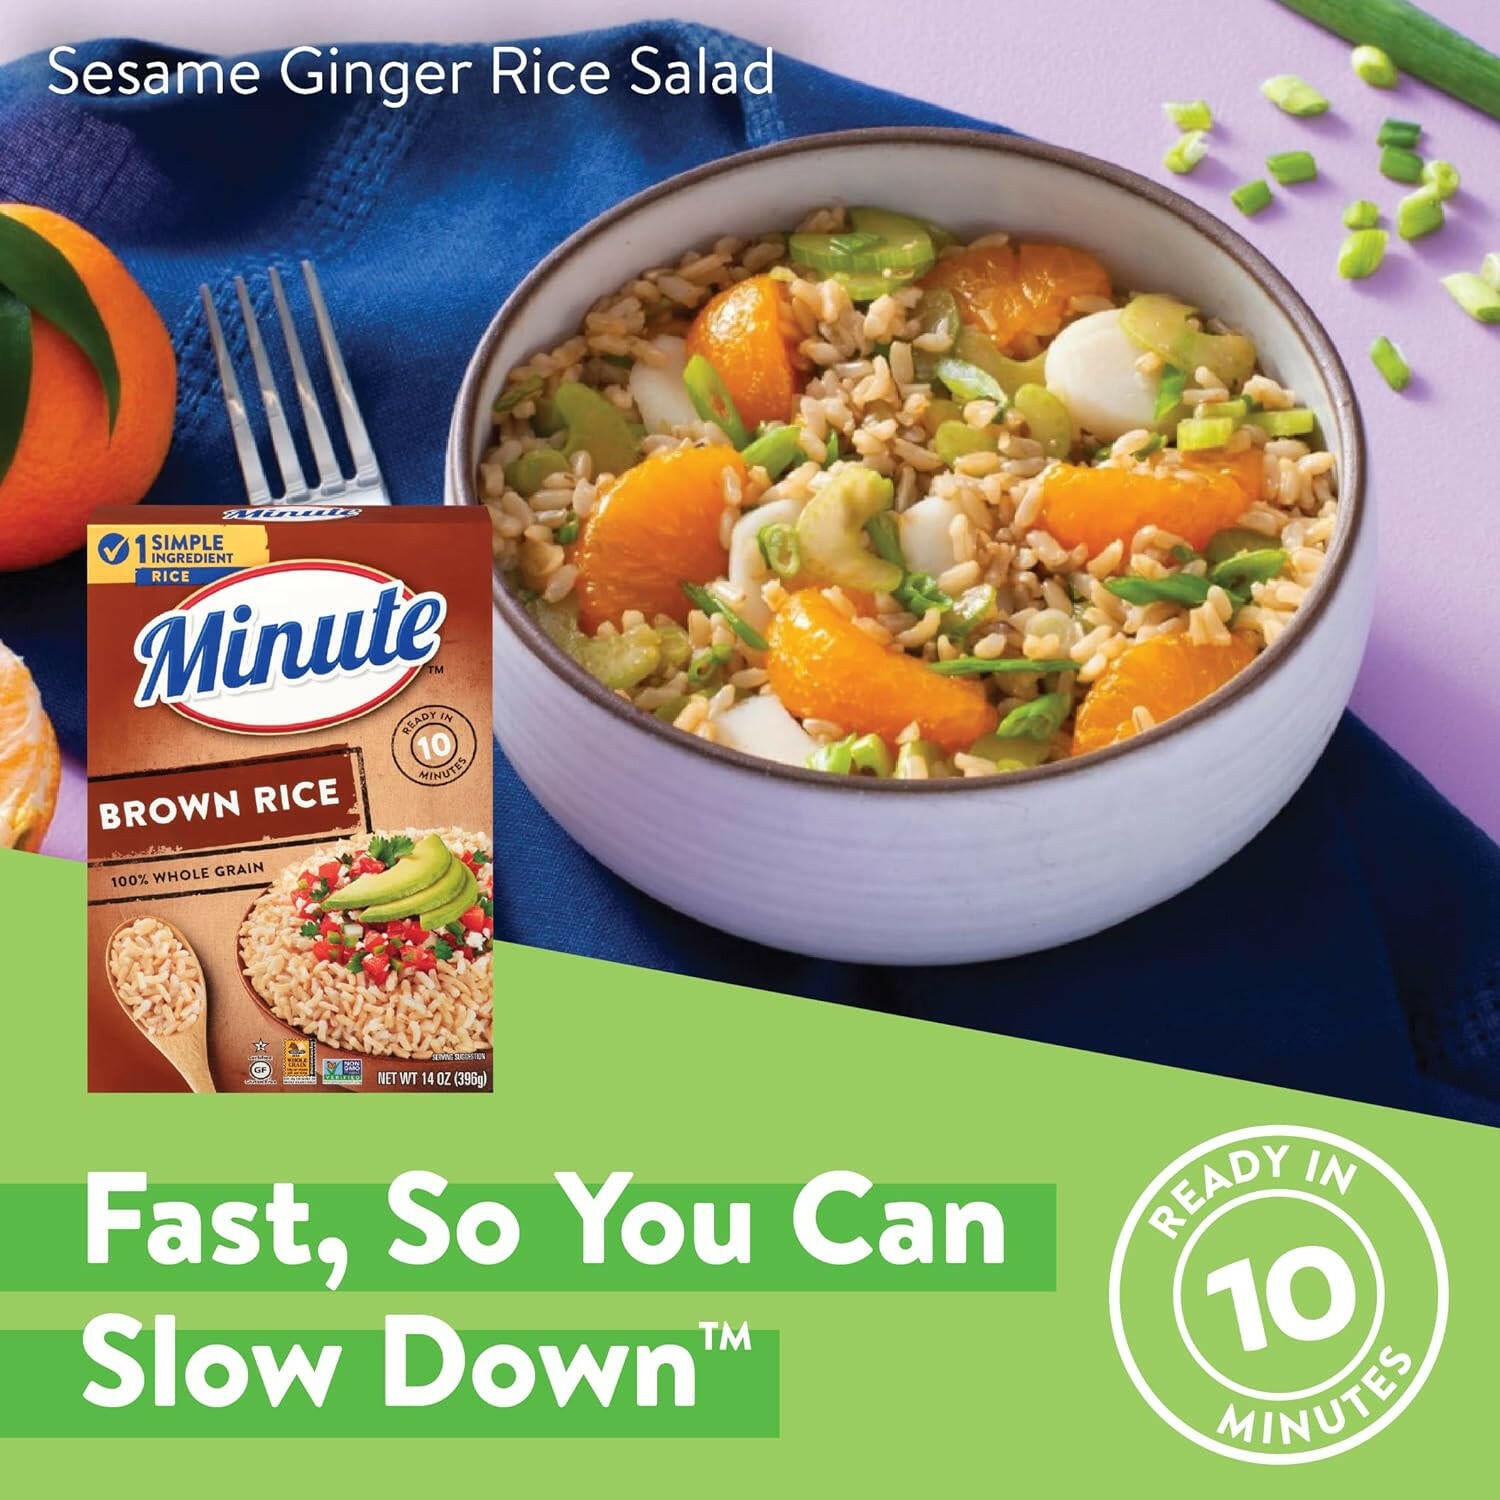 Minute Instant Brown Rice, Gluten Free, Non-GMO, 14 oz. box